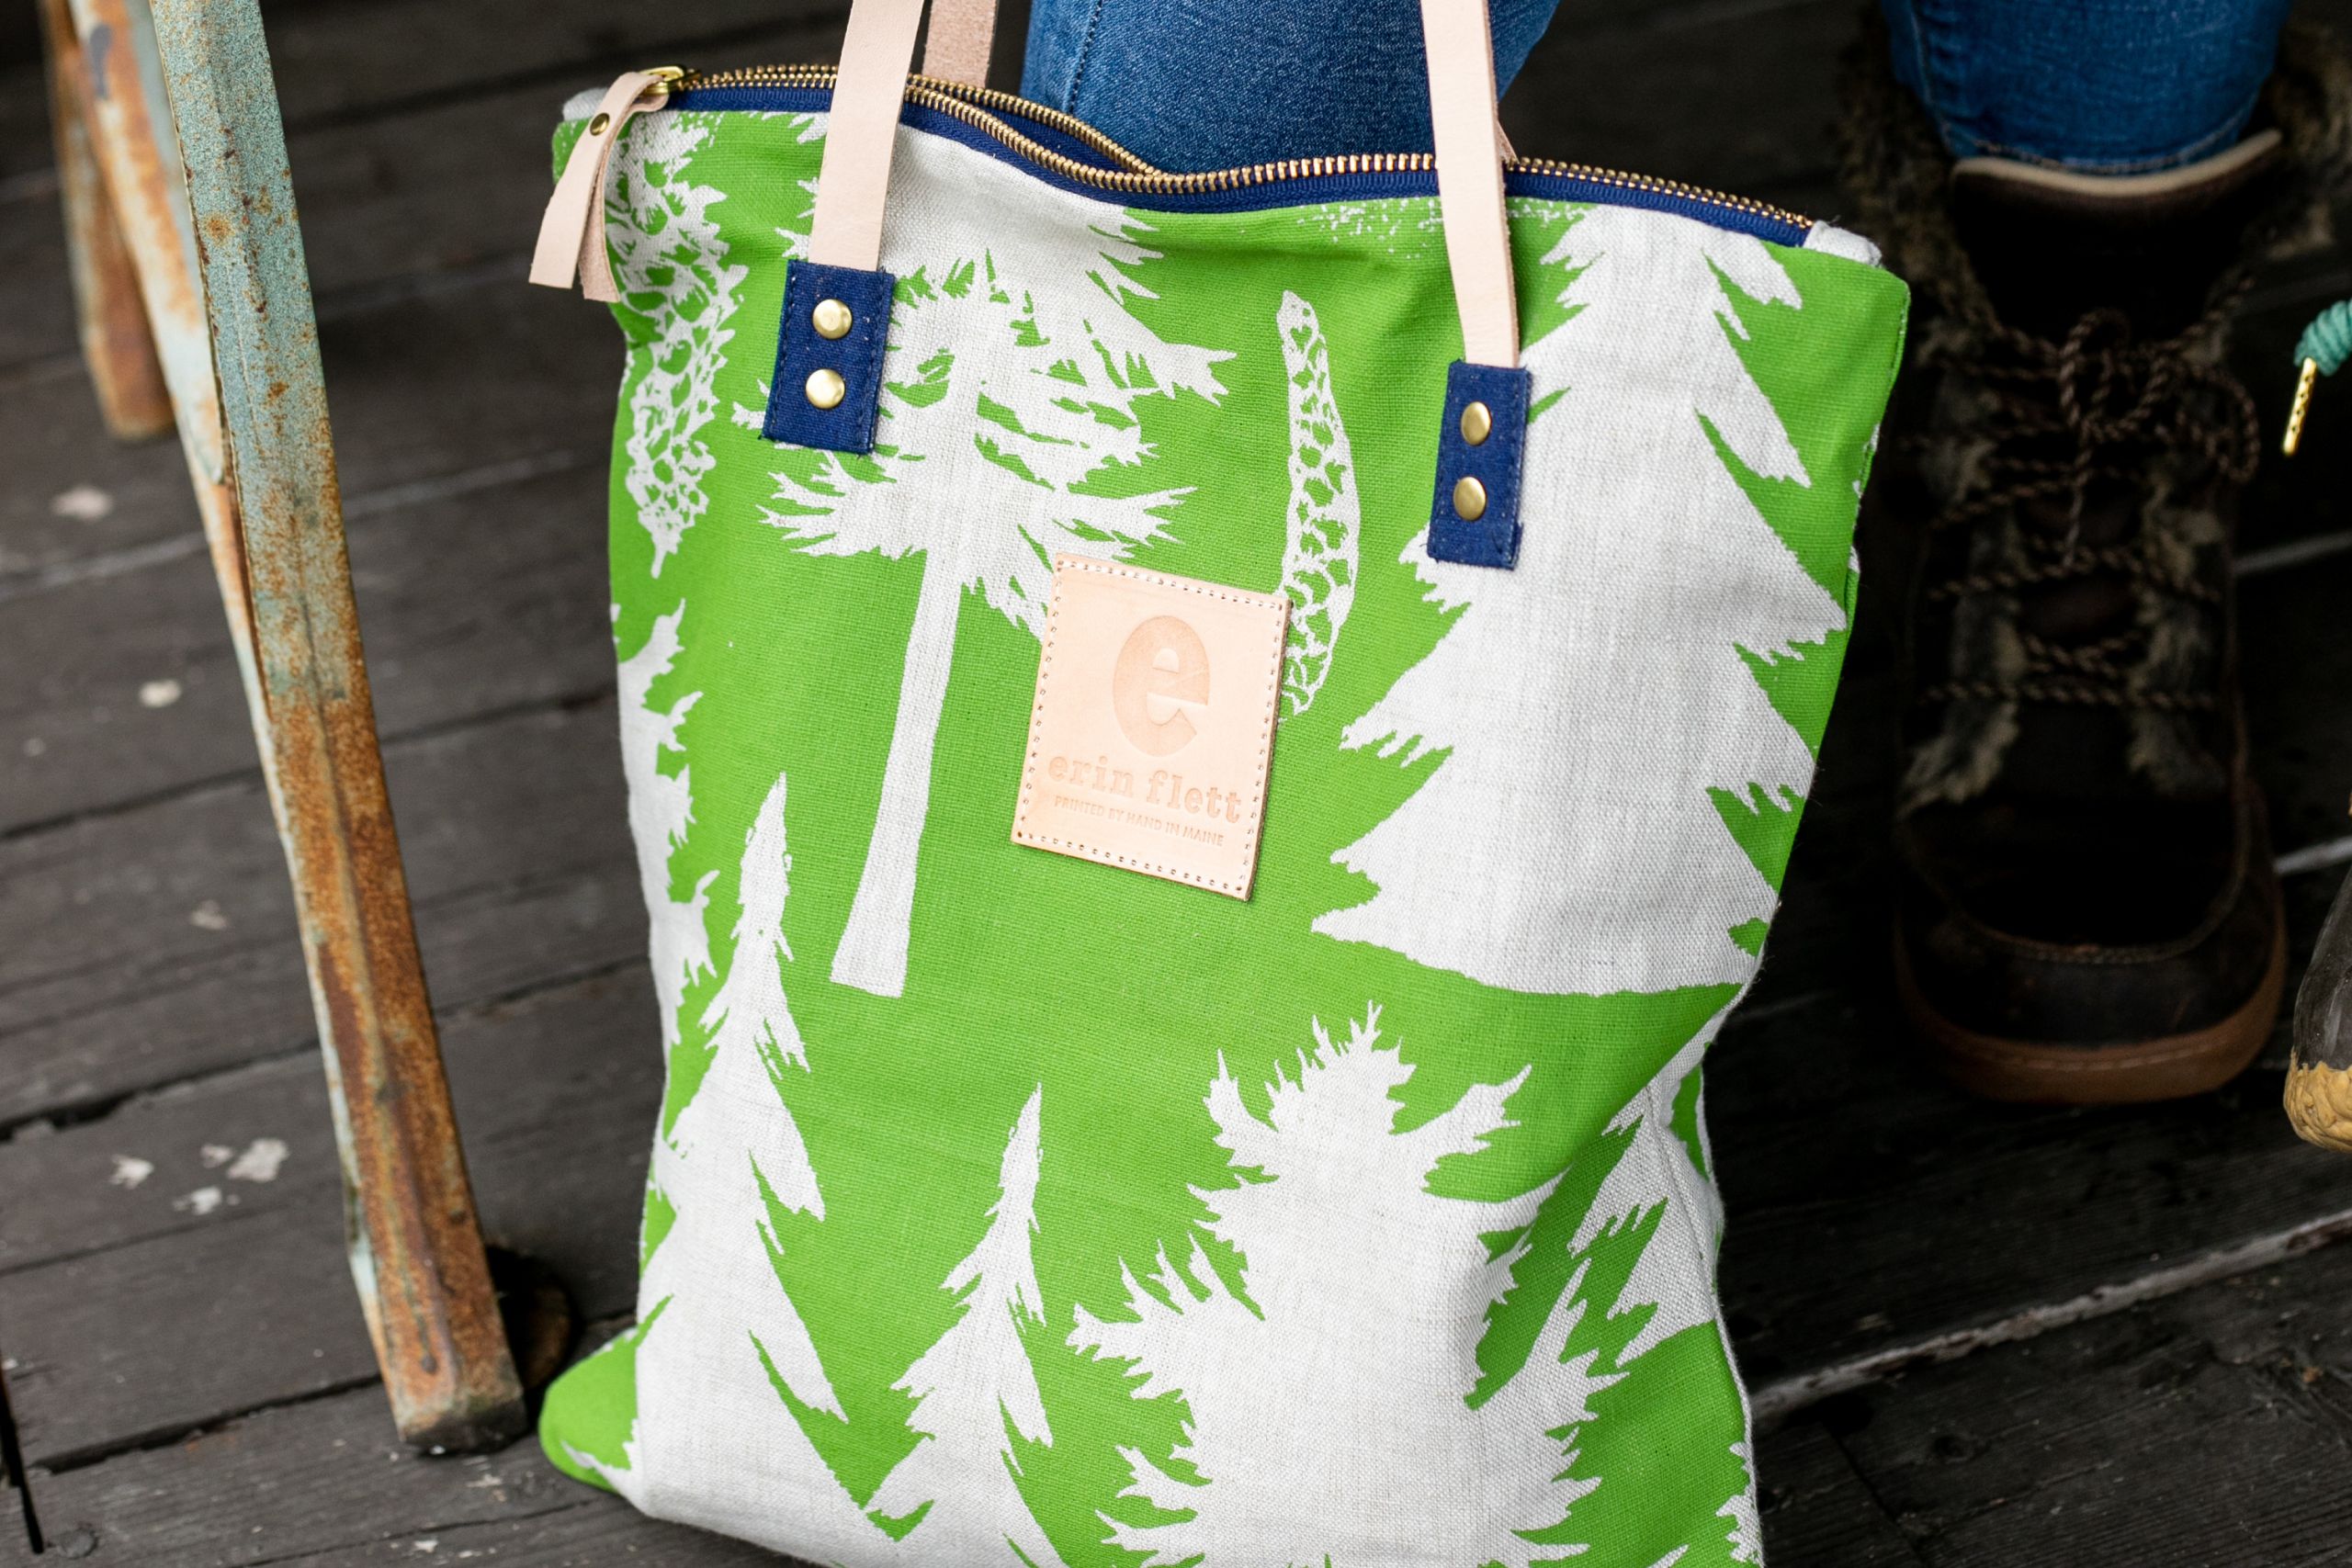 A photo of a green erin flett bag. It features a tree design.